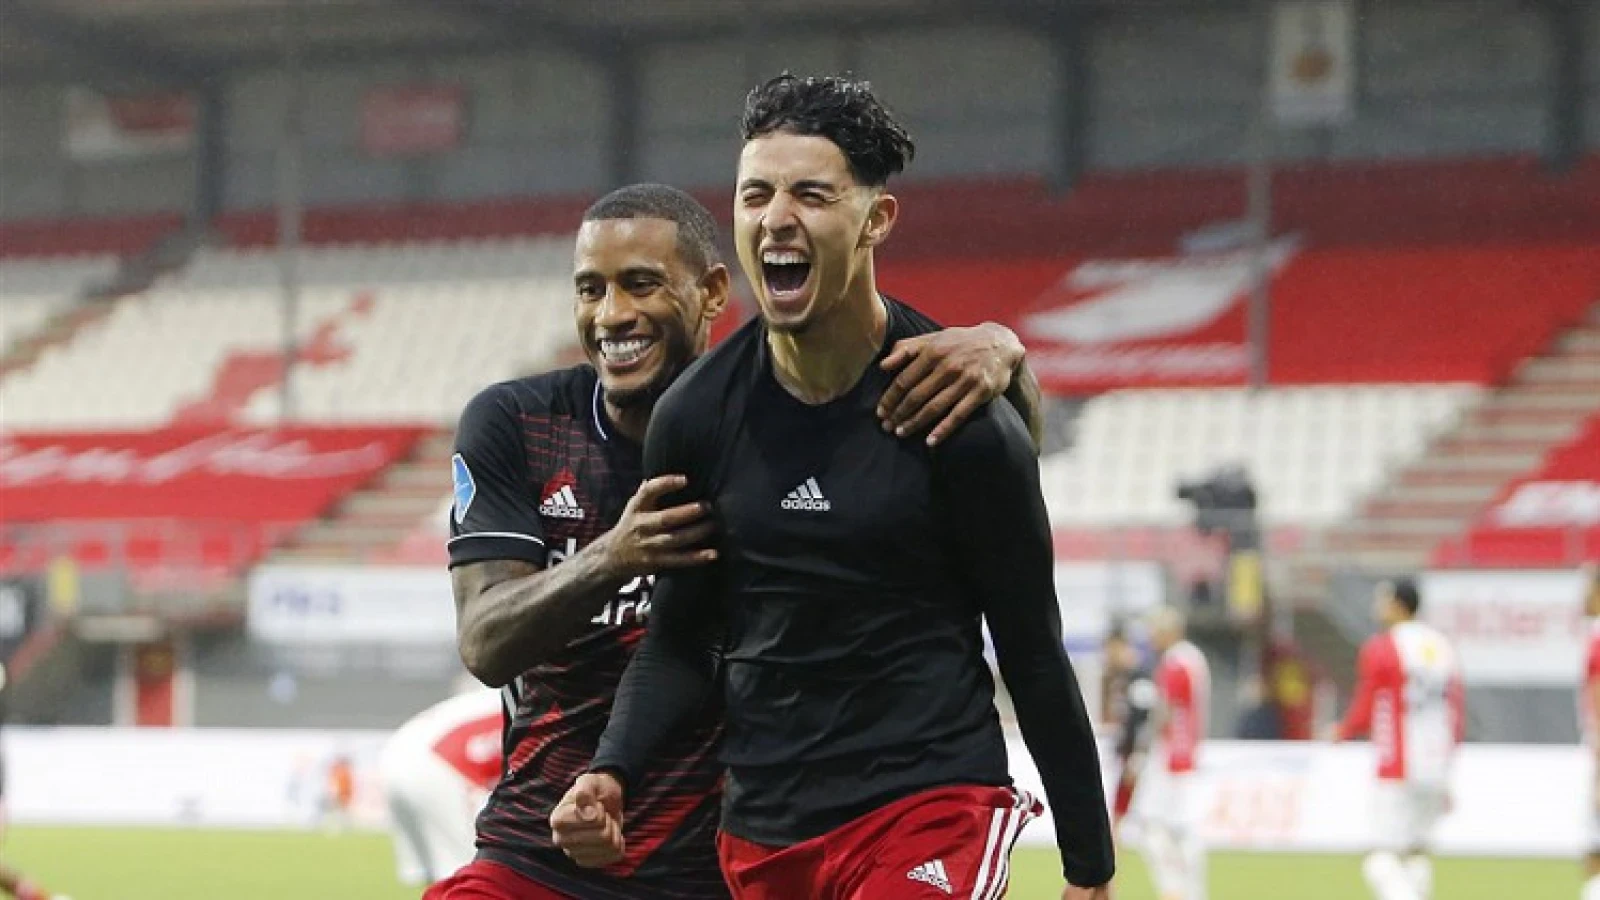 OFFICIEEL | Naoufal Bannis gaat zijn contract bij Feyenoord verlengen